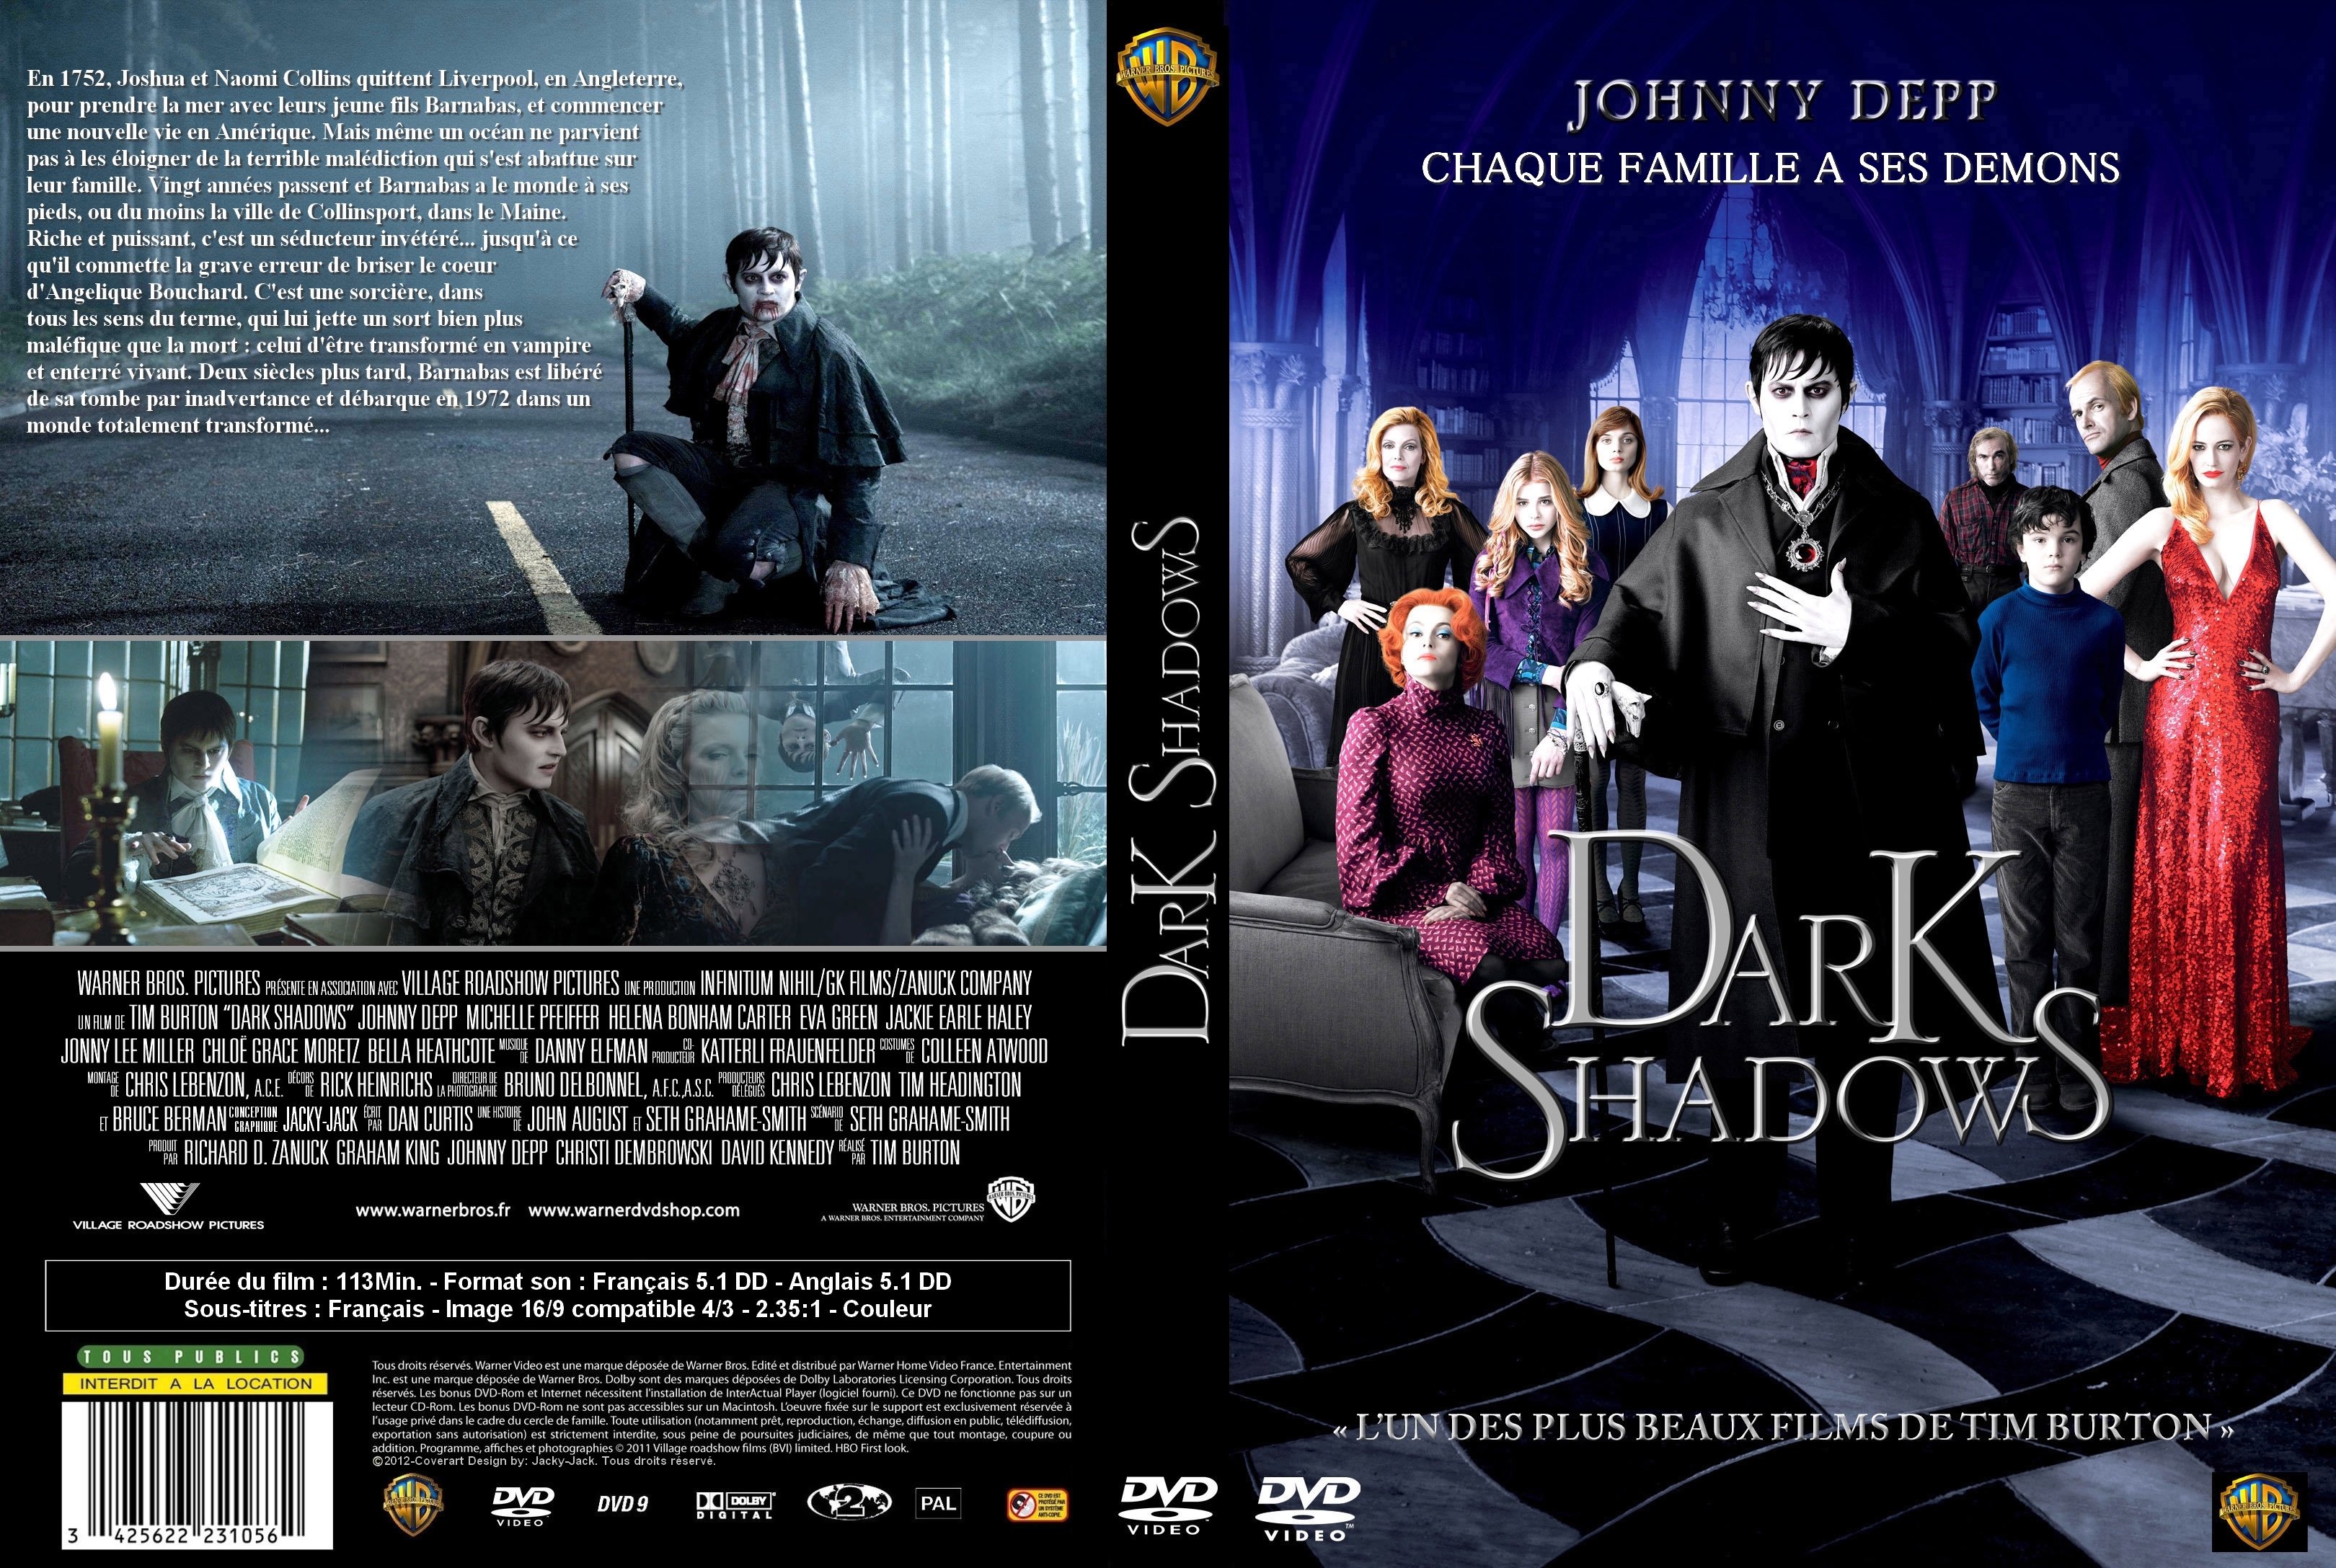 Jaquette DVD Dark shadows custom v2